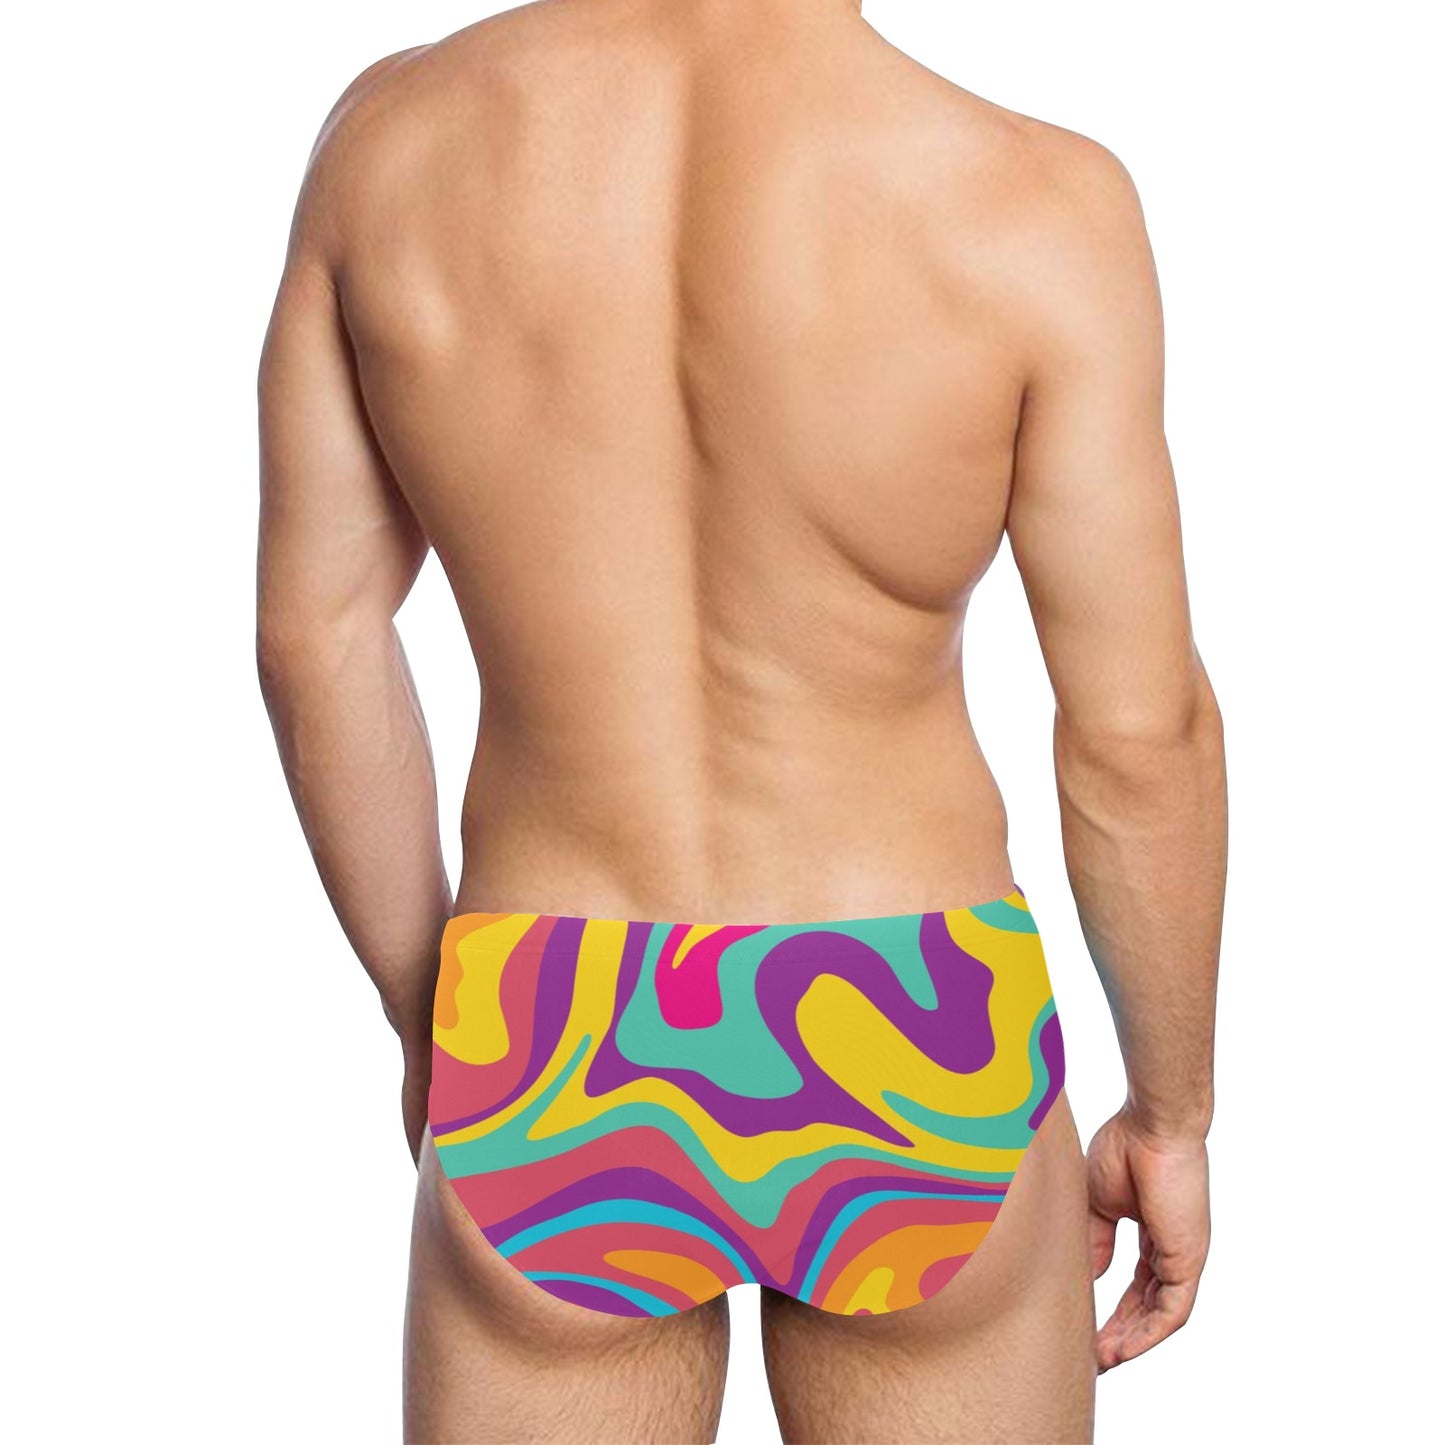 Groovy Men Swim Briefs, Funky Sexy 70s Swimwear Trunks Swimming Suit Swimsuit Low Rise Underwear Vintage Designer Swimwear